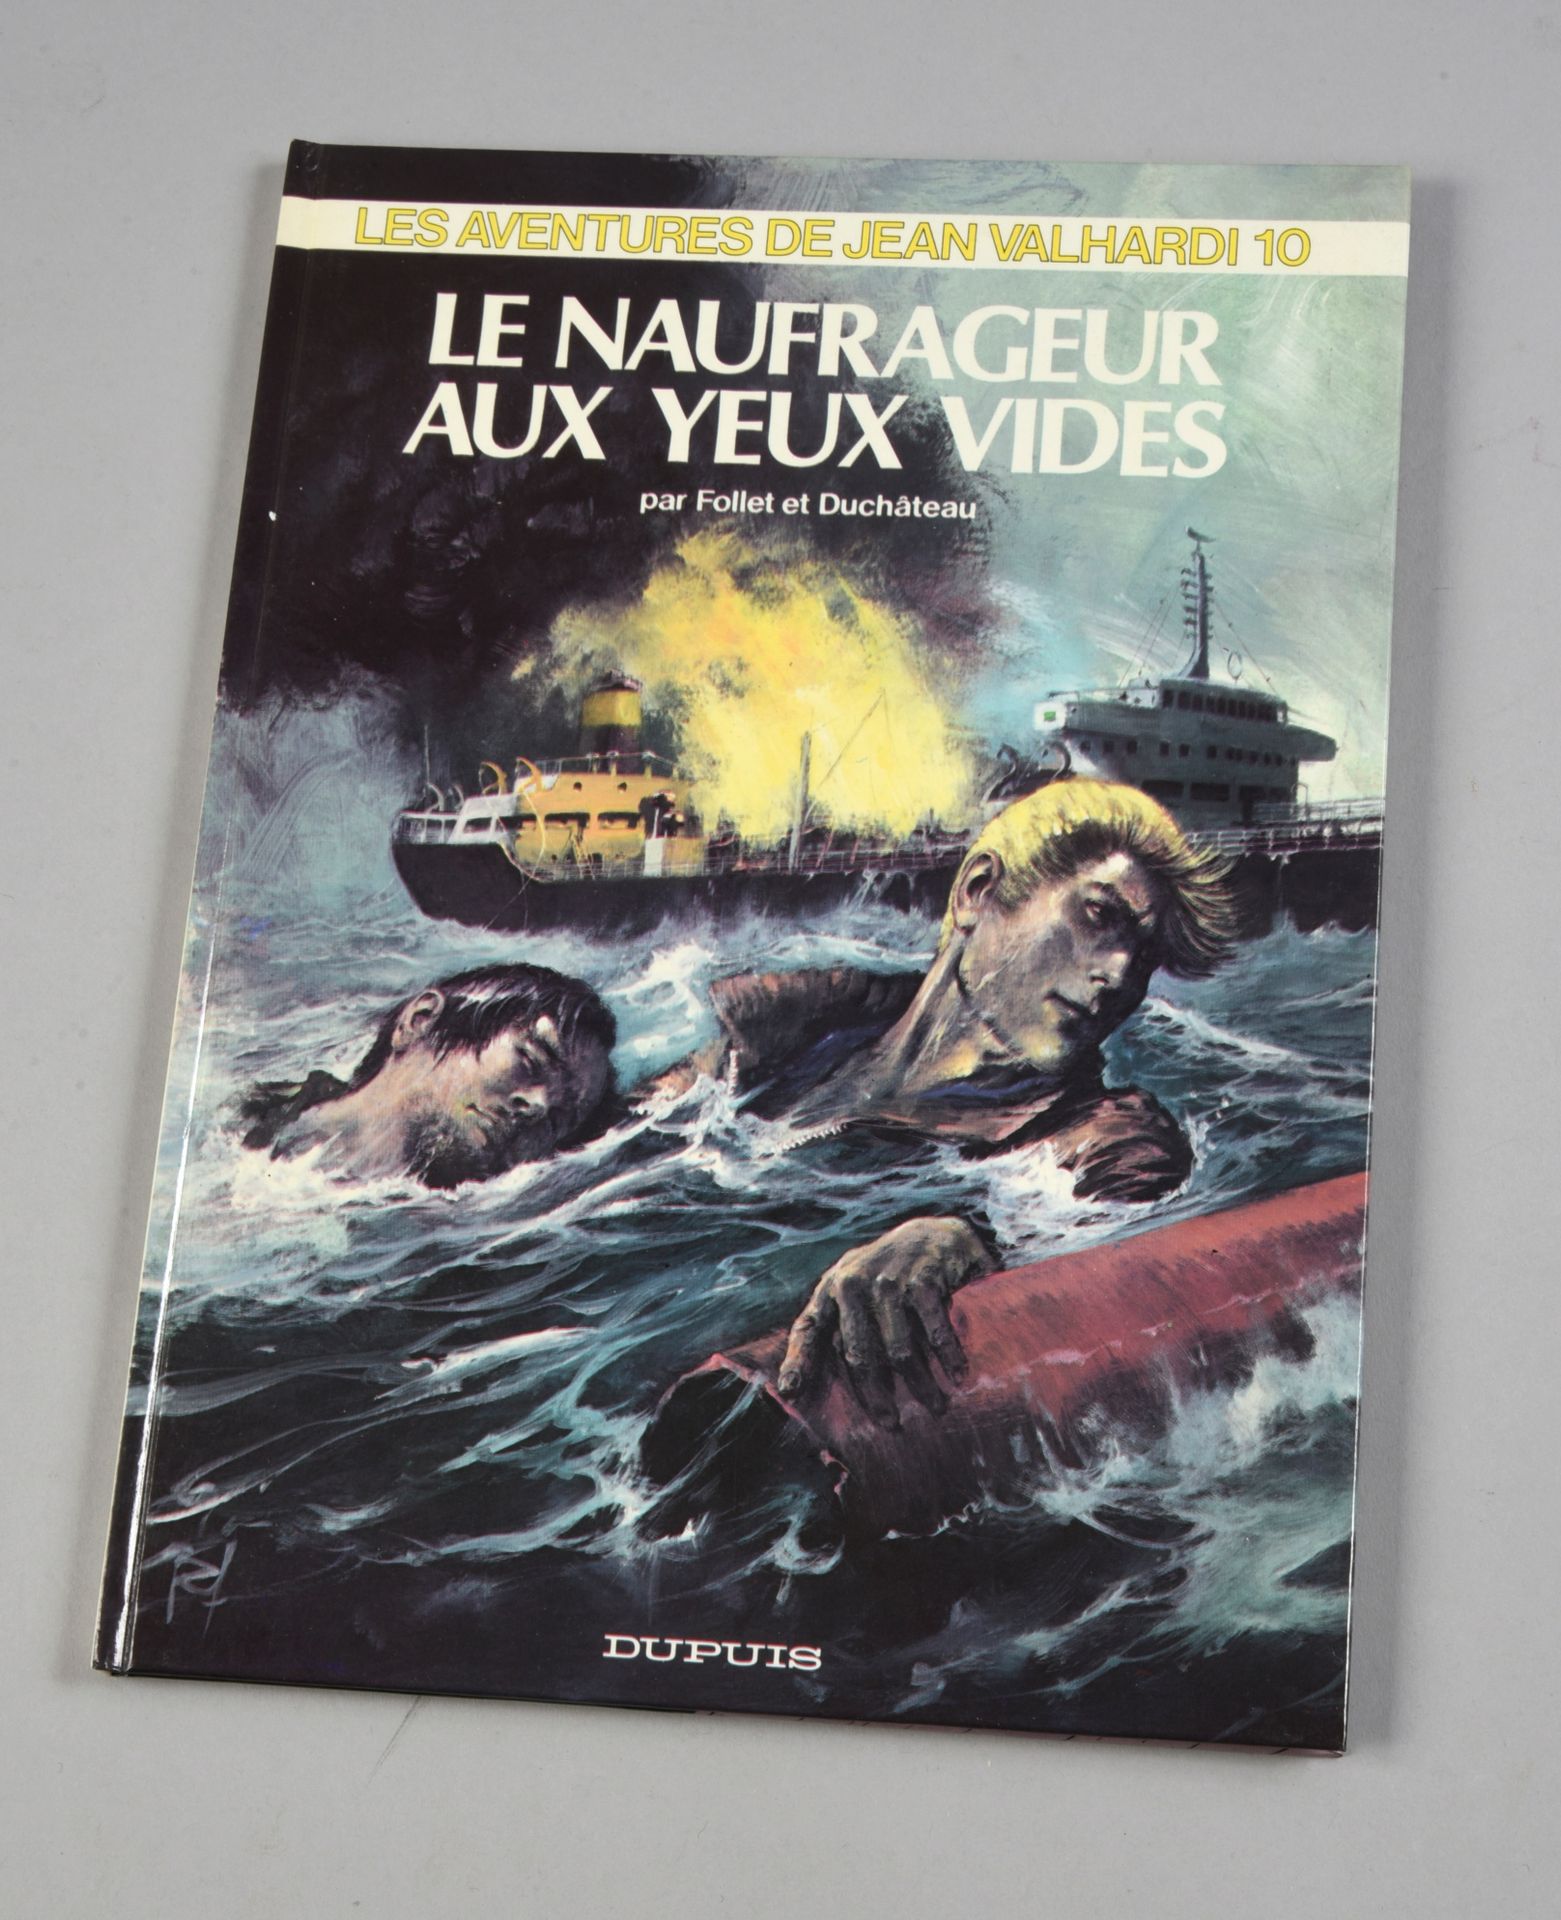 FOLLET Jean Valhardi. LES NAUFRAGEURS AUX YEUX VIDES. Erste Ausgabe Dupuis 1974,&hellip;